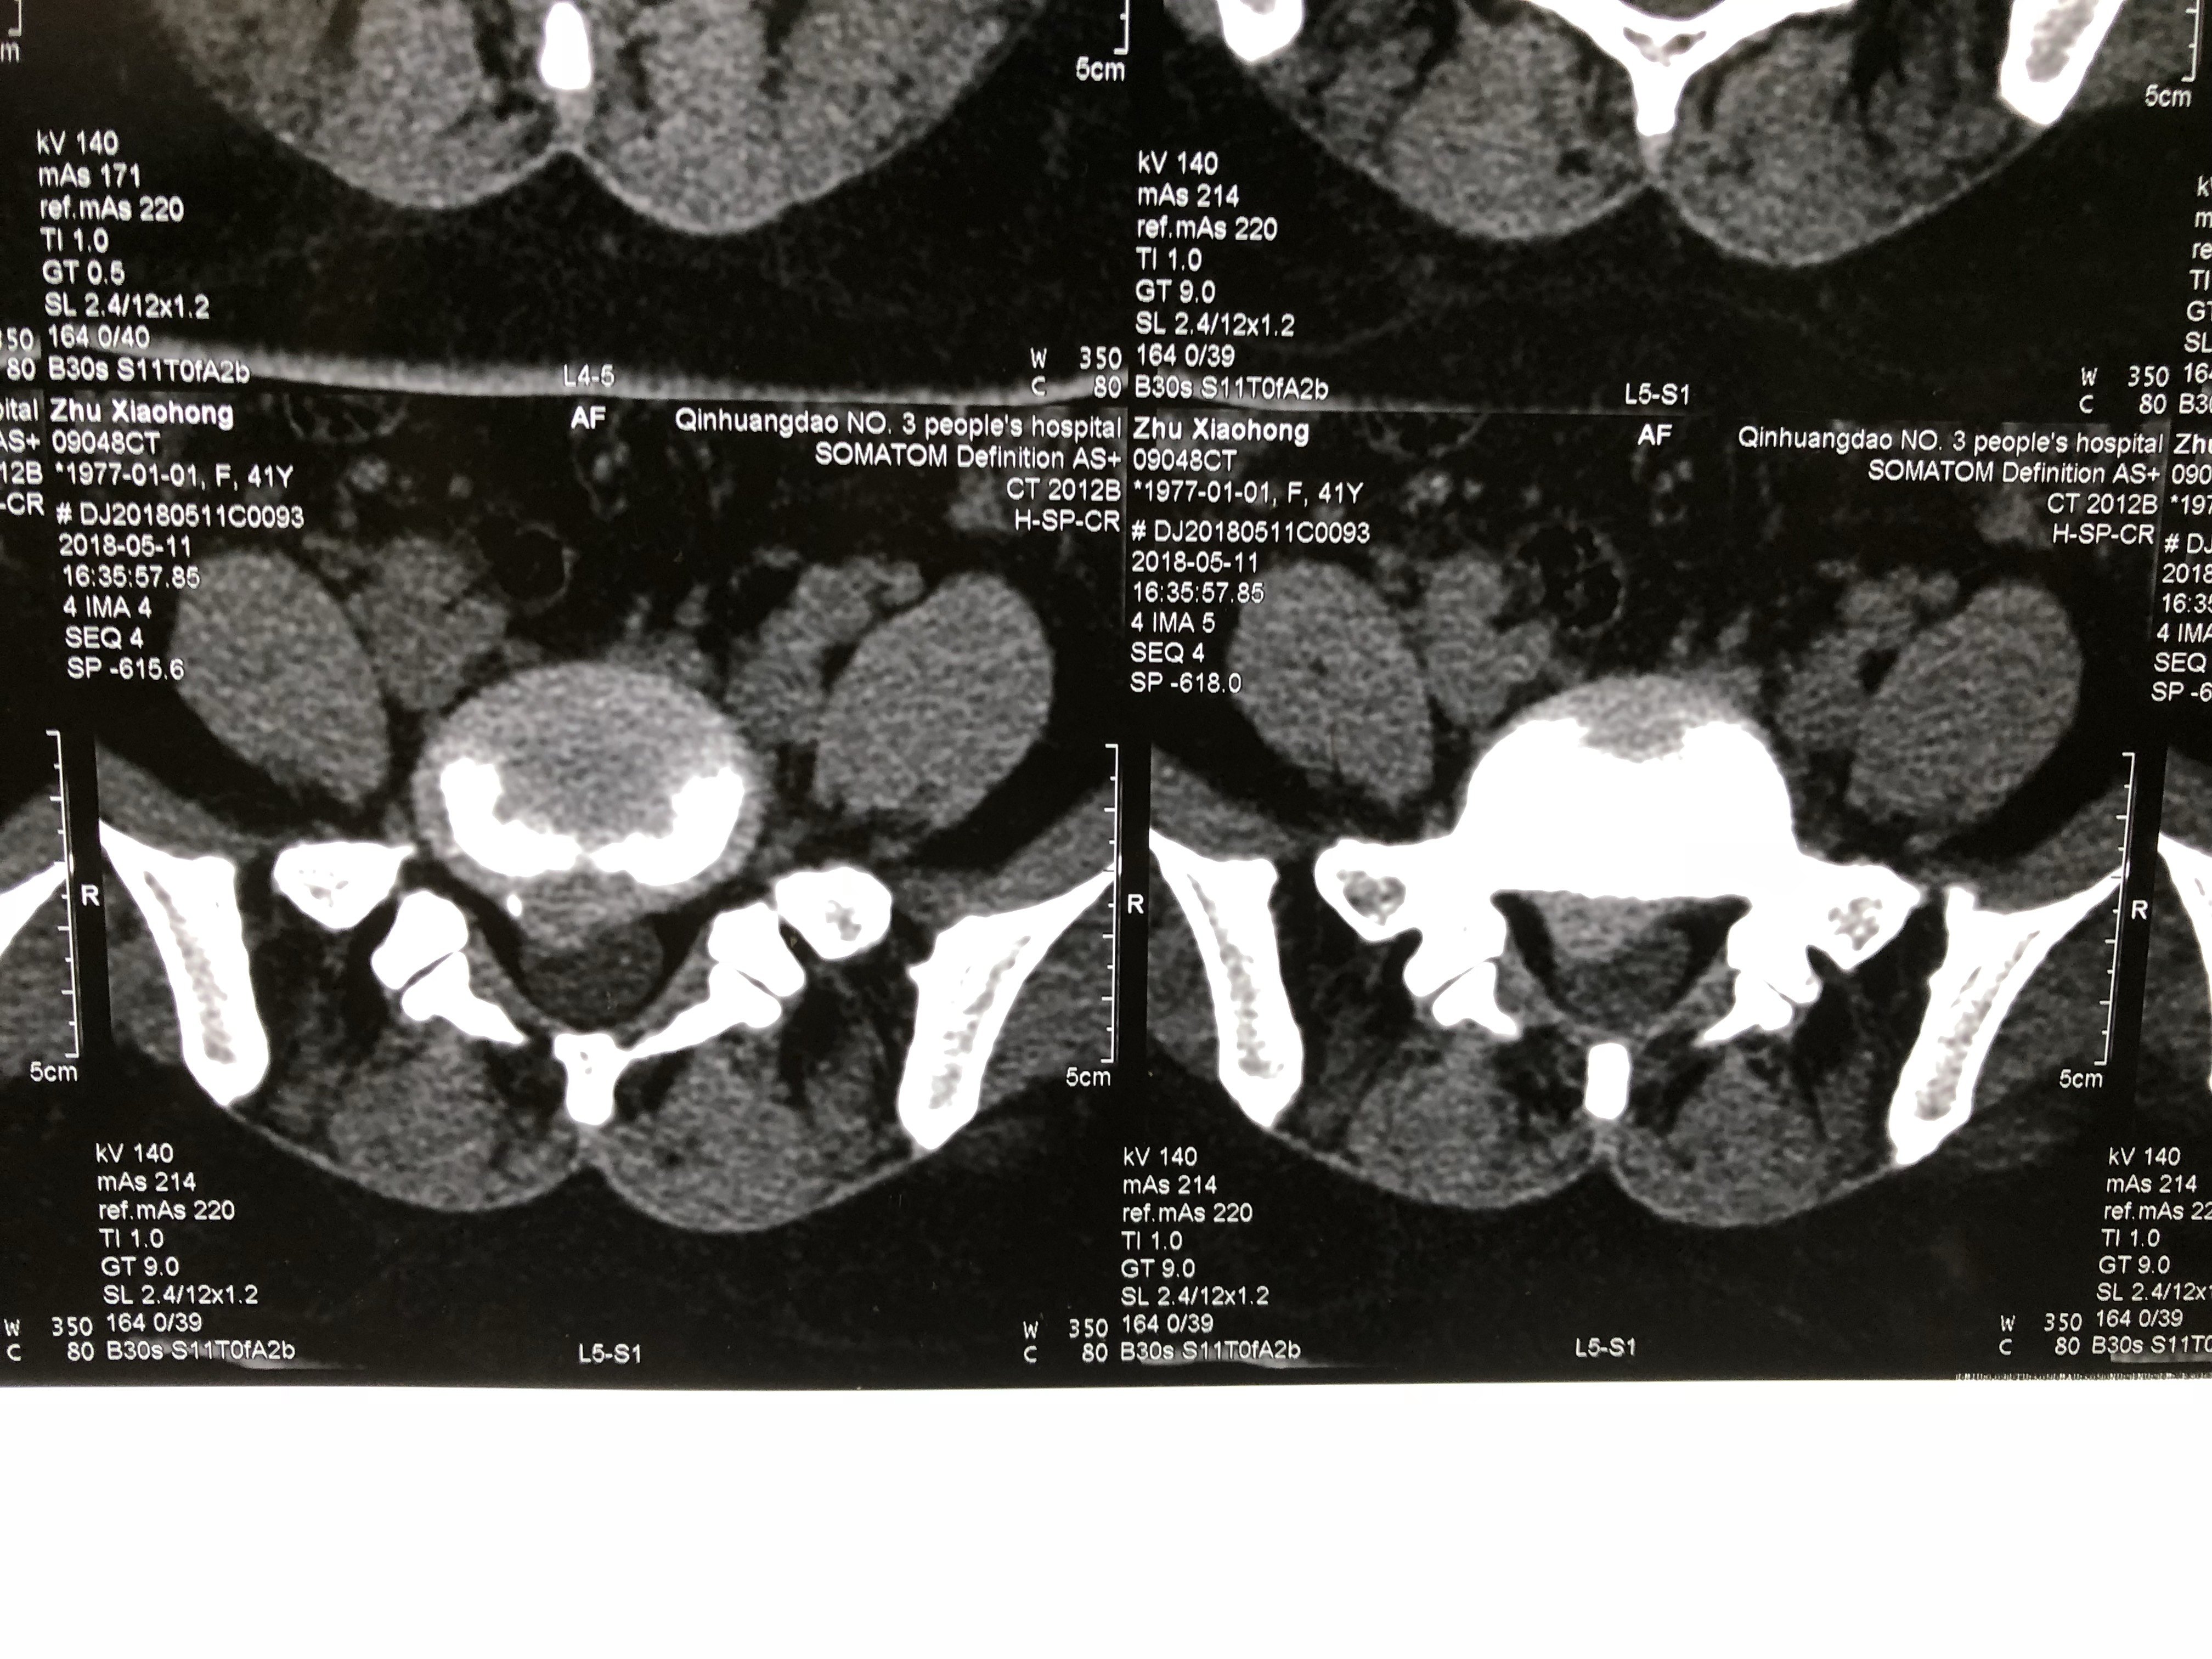 术前腰5骶1间盘突出ct术前核磁术前x线手术定位术中摘取椎间盘术后右